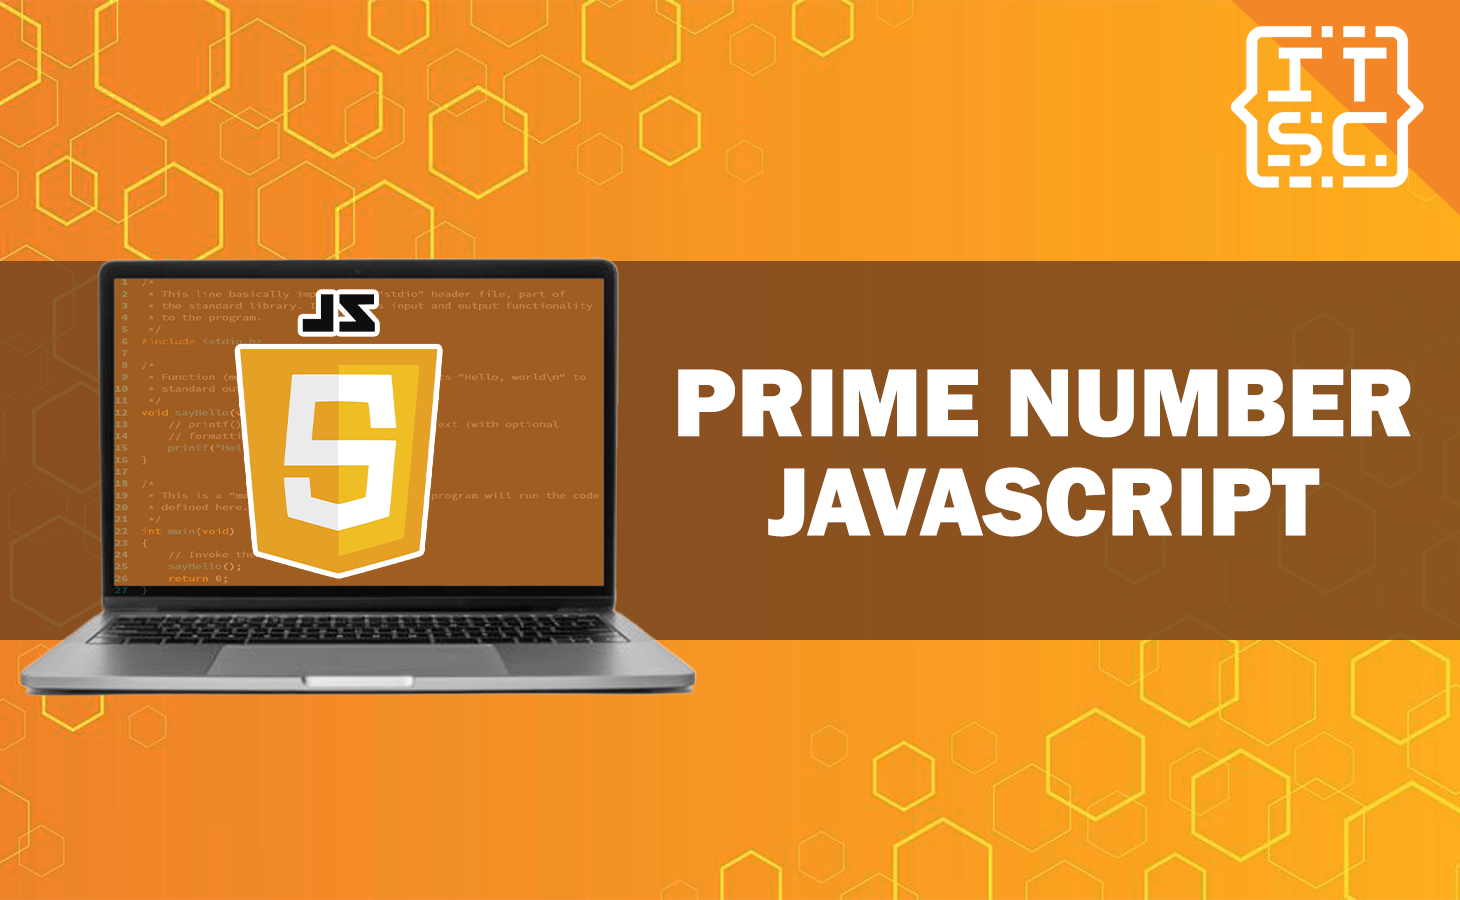 Prime Number JavaScript